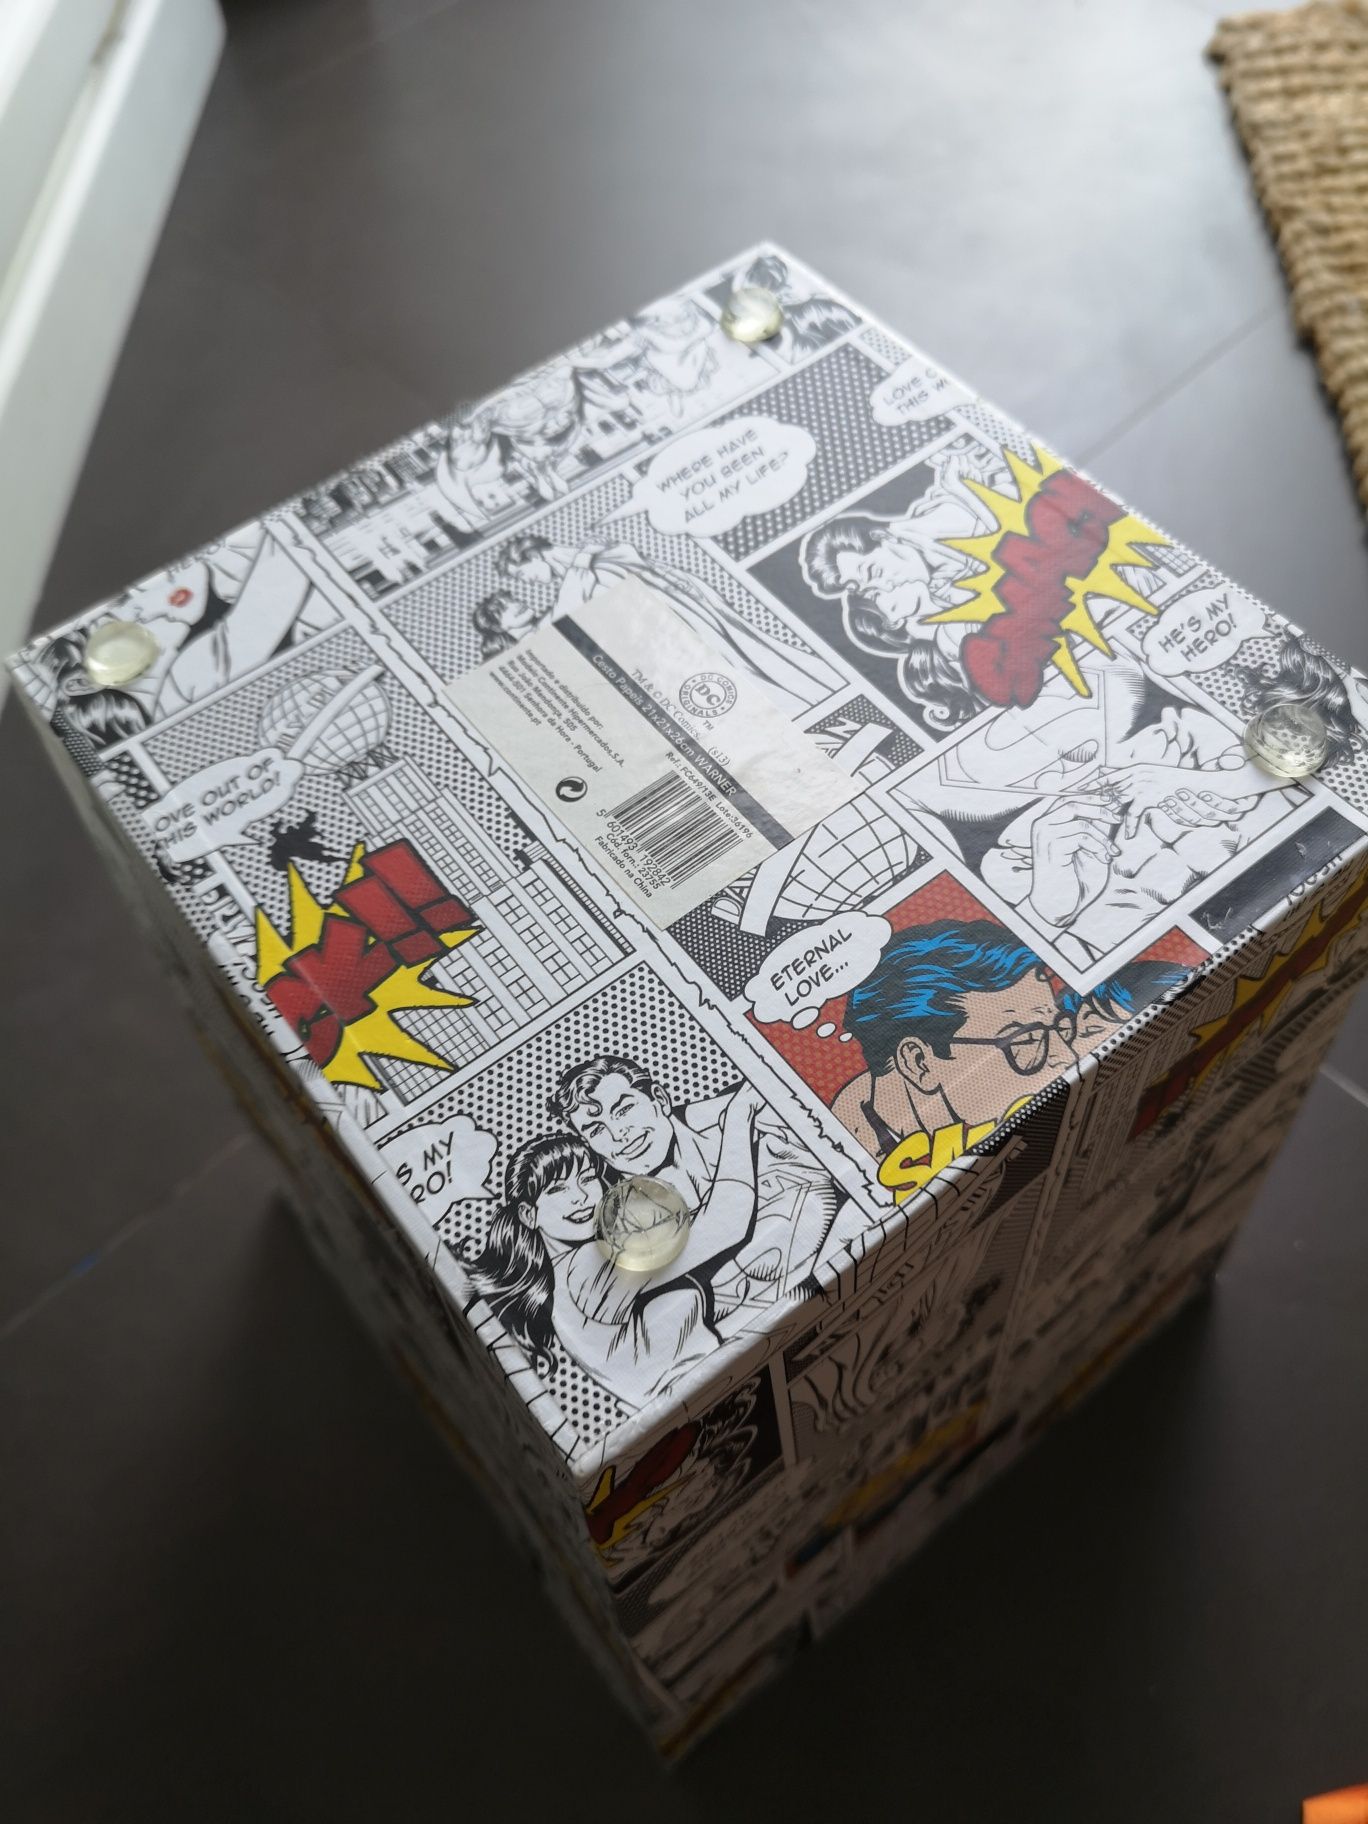 Vendo caixote balde cesto papéis novo DC comics banda desenhada